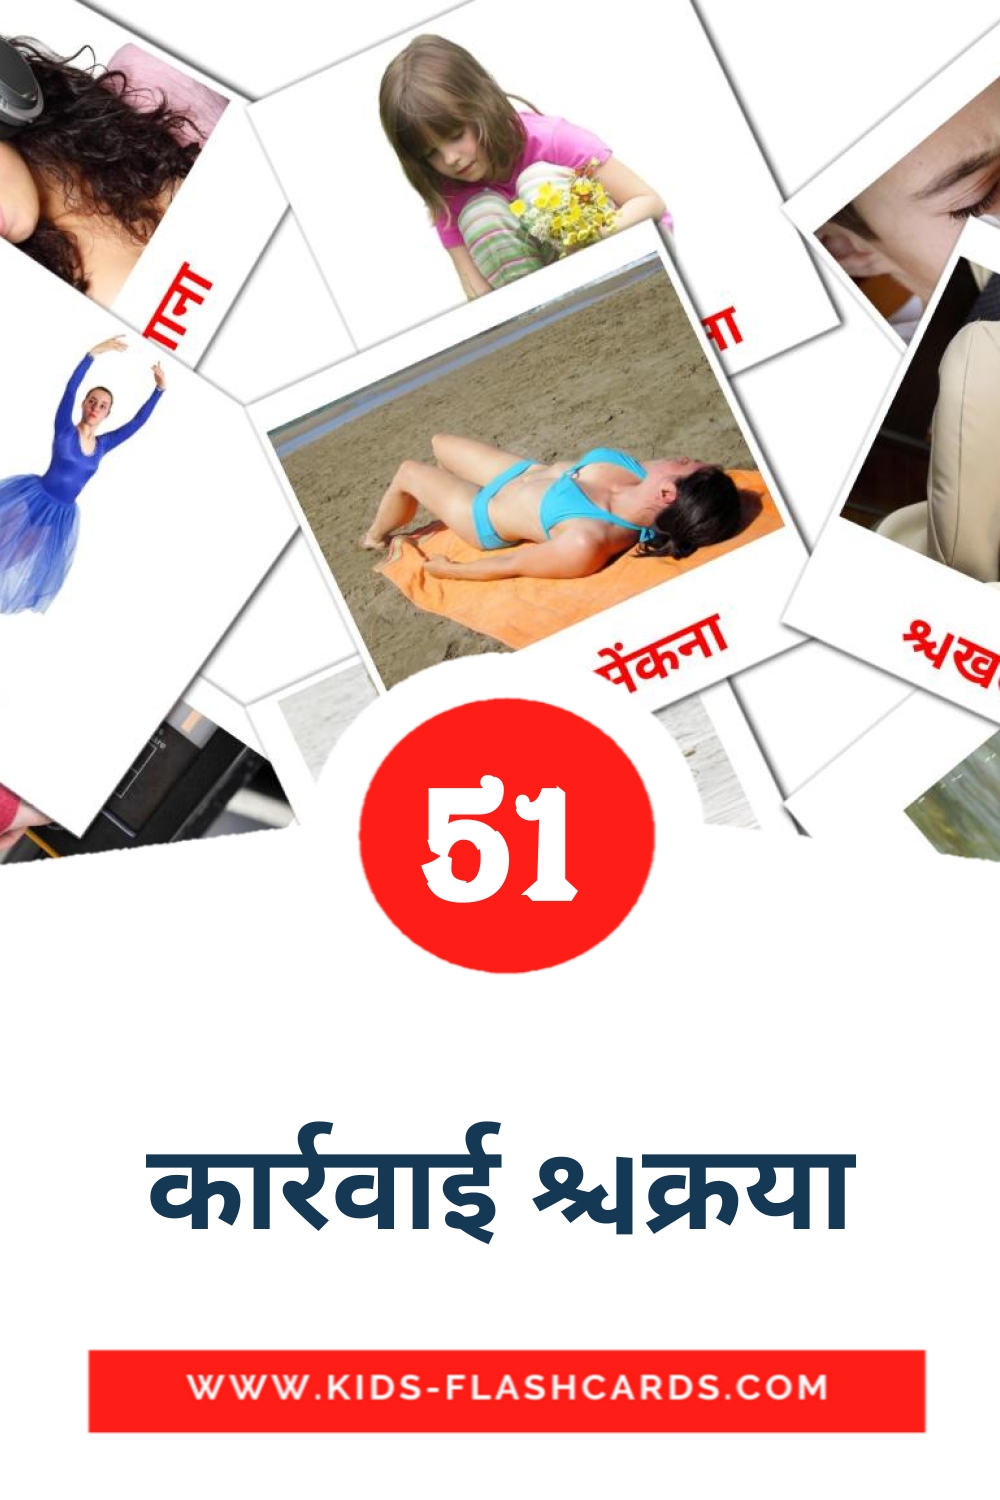 51 tarjetas didacticas de कार्रवाई क्रिया para el jardín de infancia en hindi